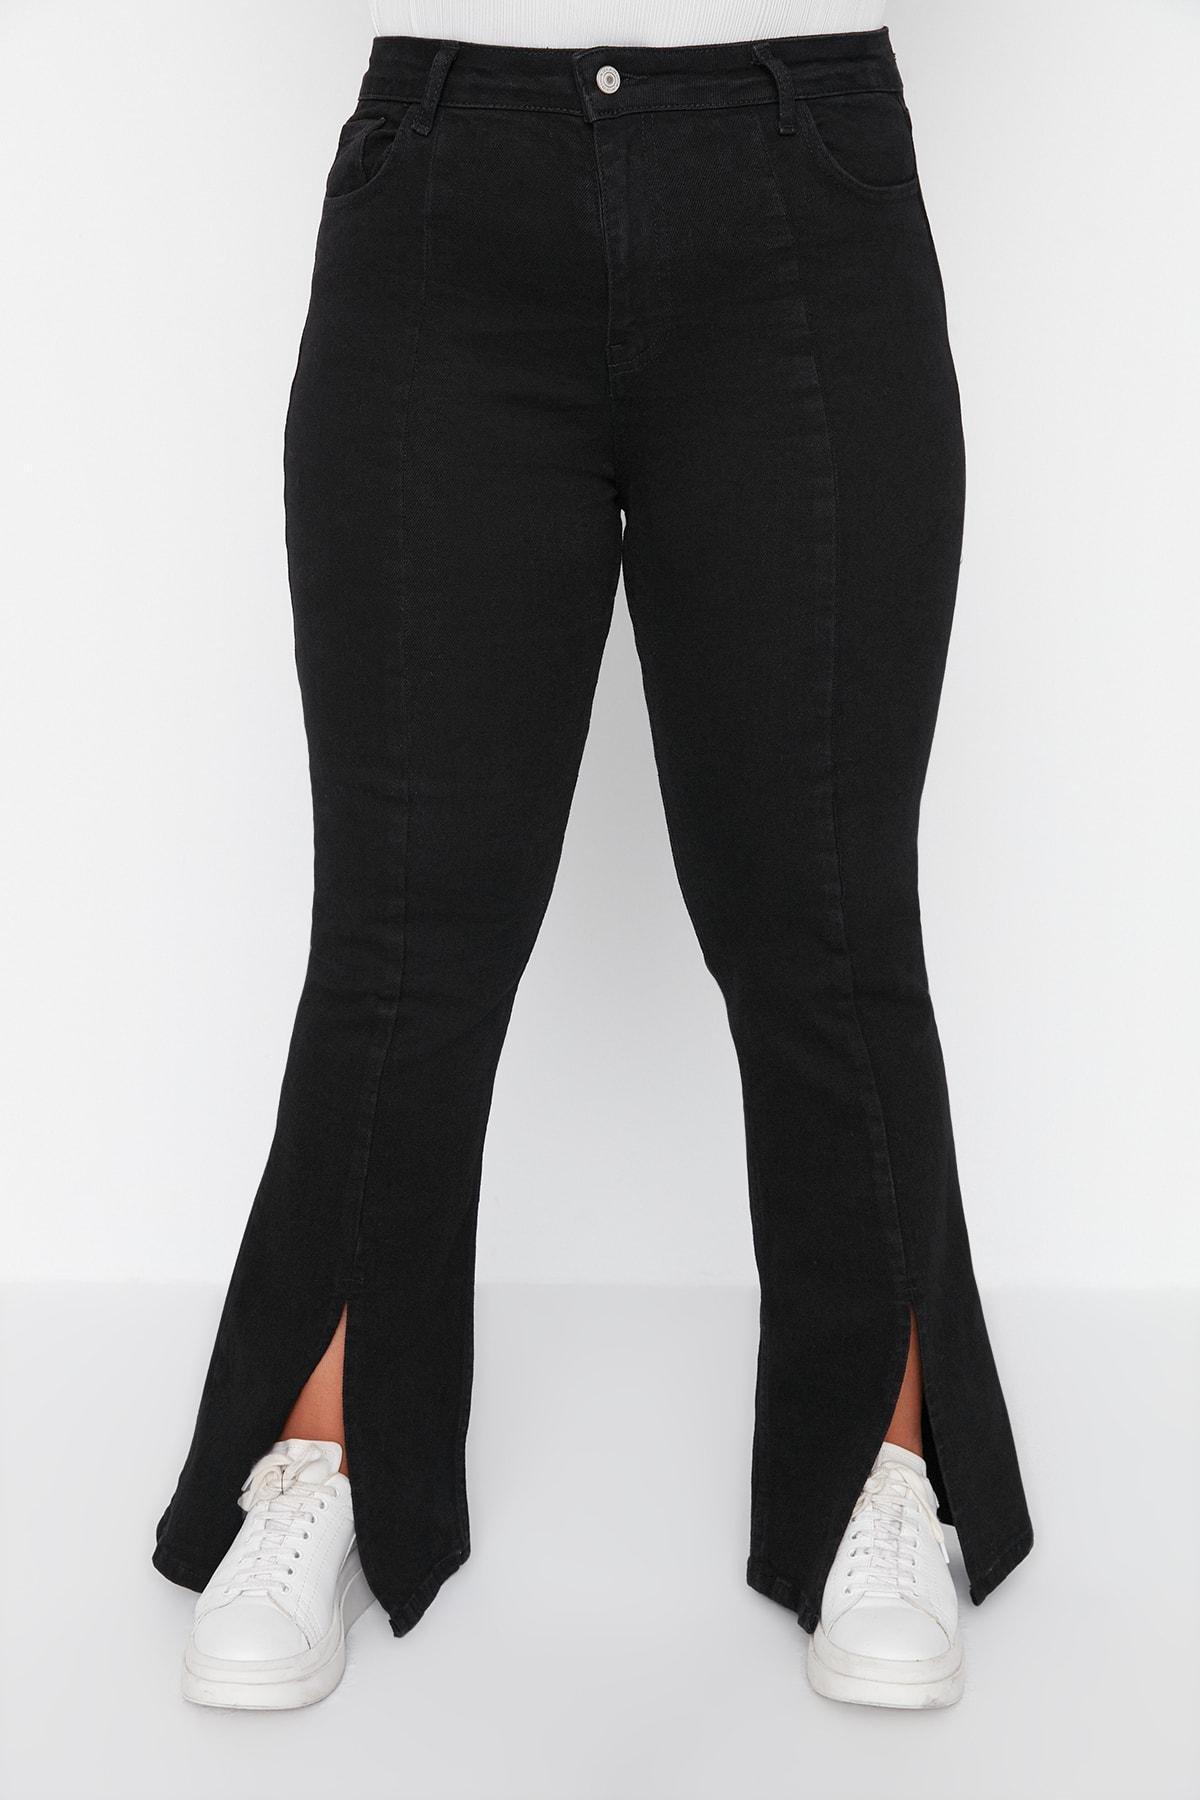 Trendyol - Black Slim Denim Plus Size Jeans